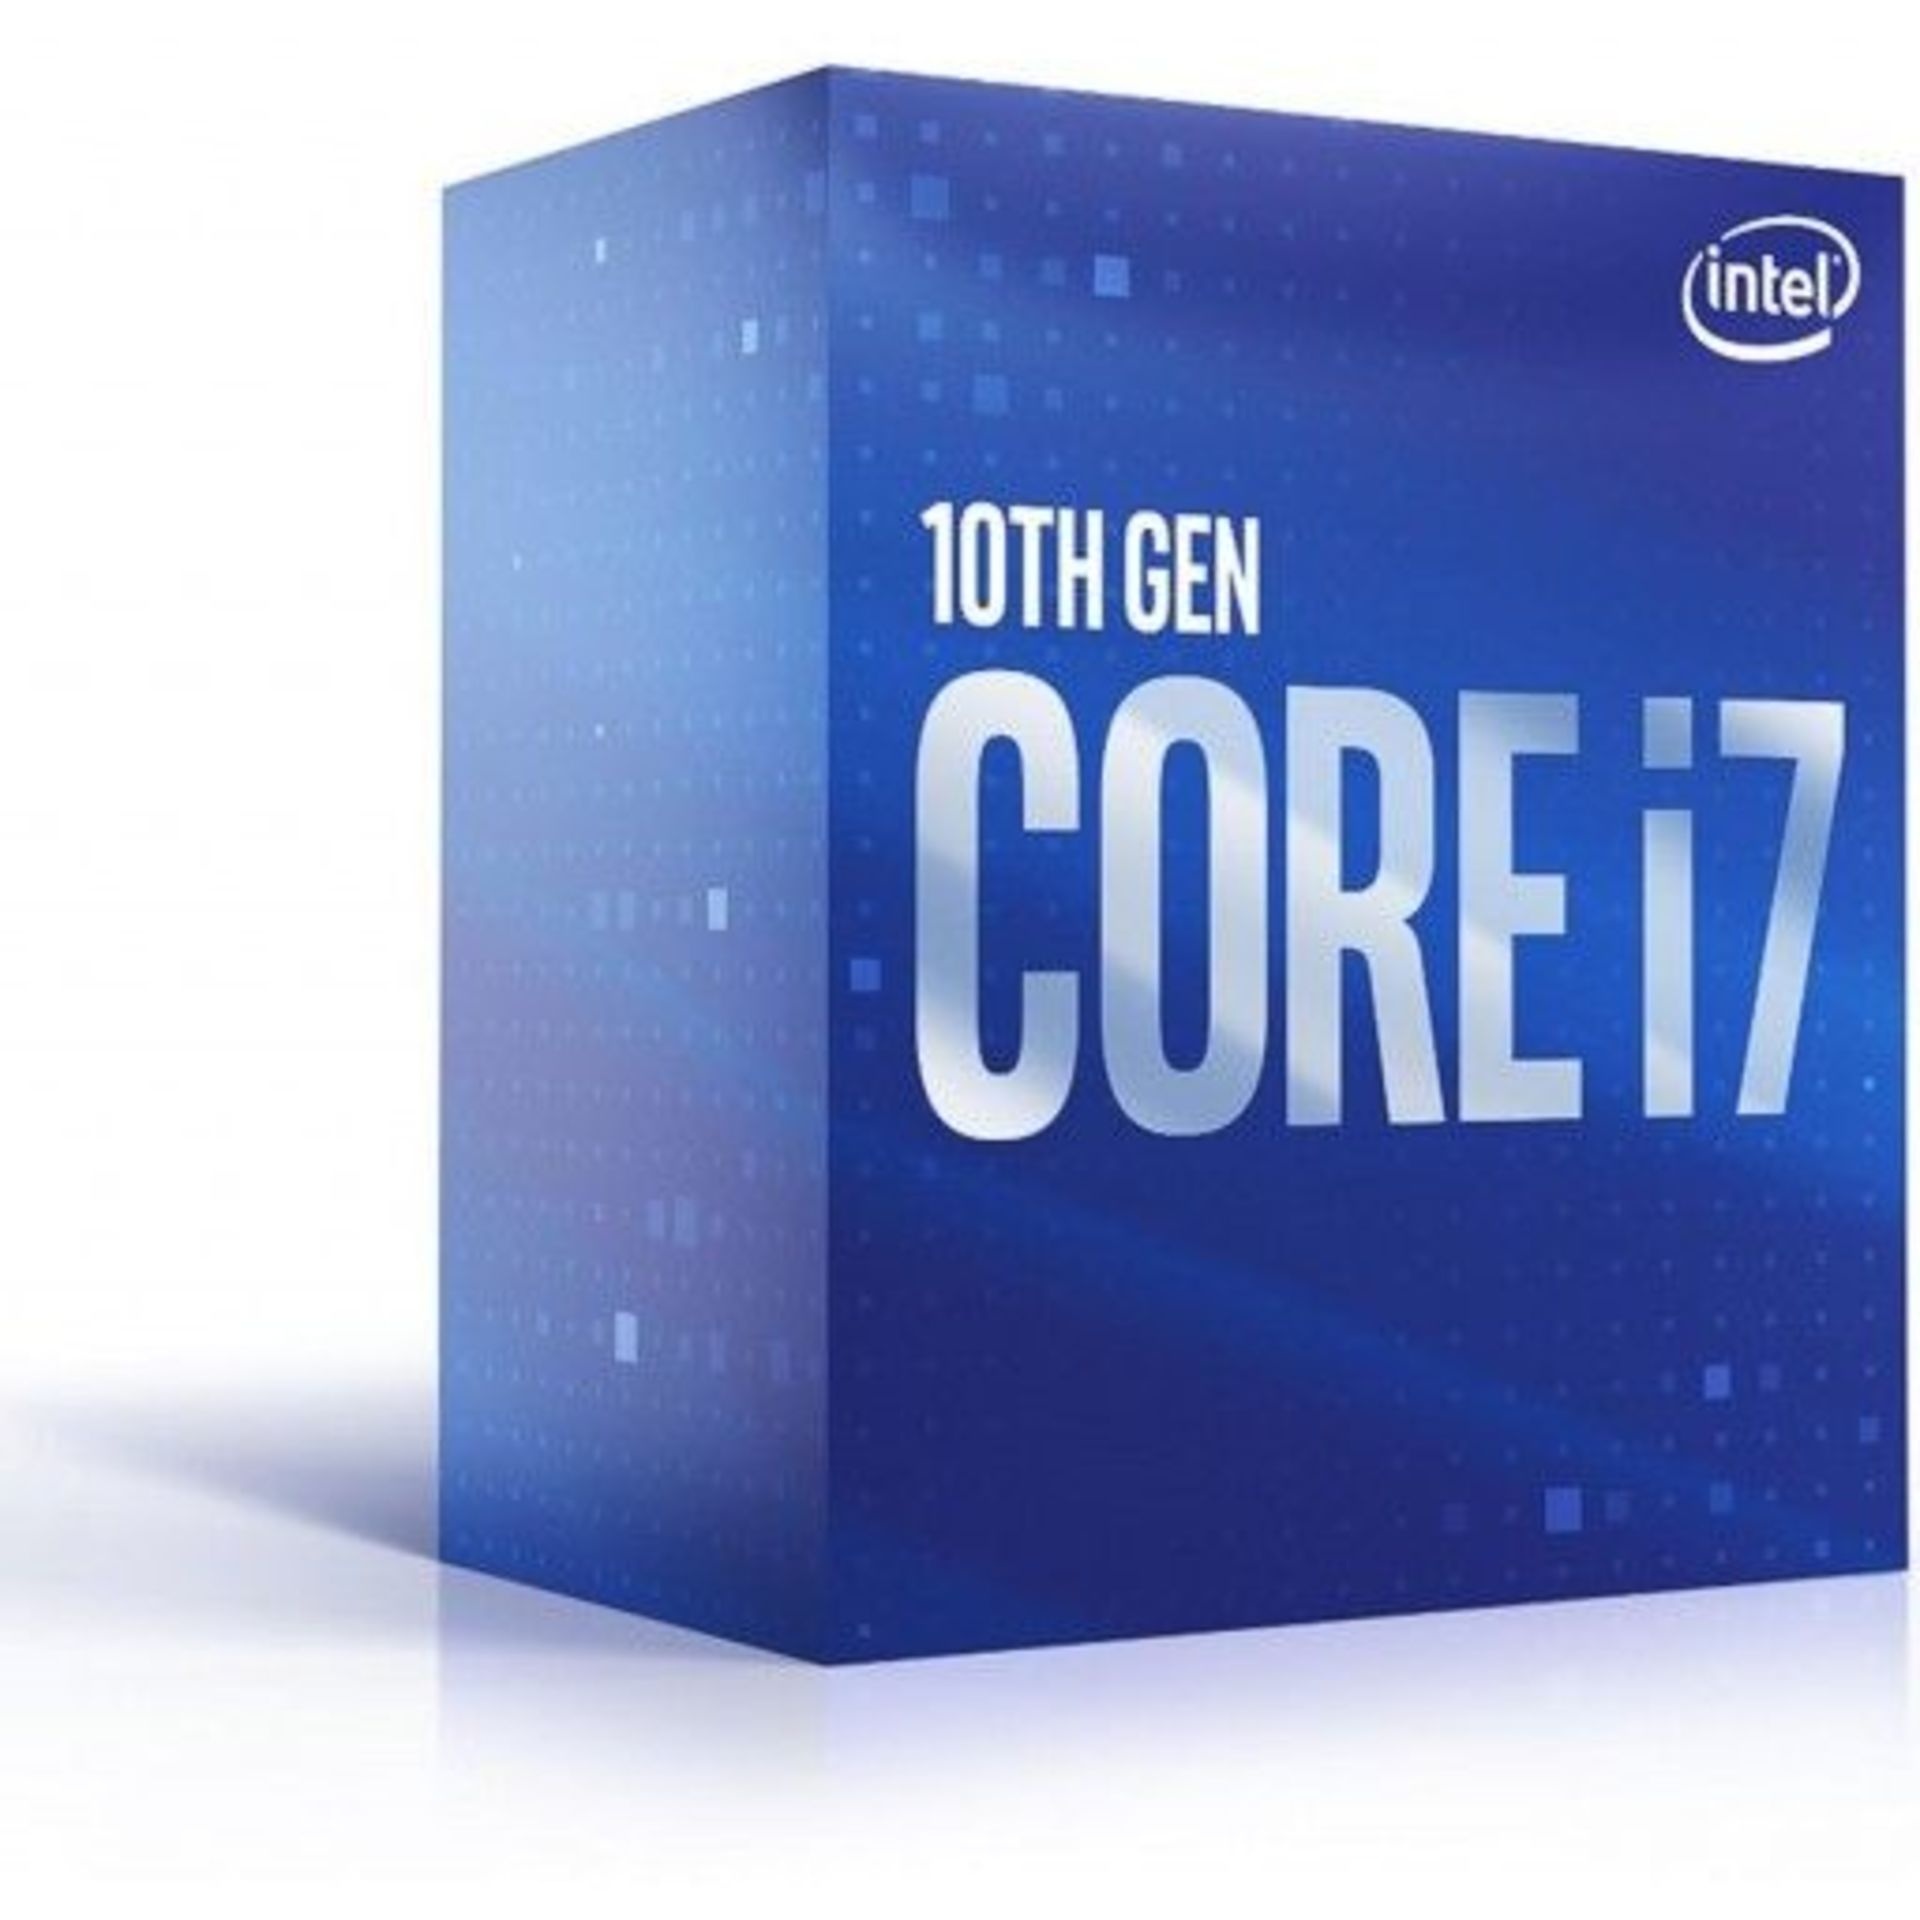 Intel Core i7 10700F 8 Core Comet Lake 10th Generation CPU / Processor. - P2. RRP £320.00.